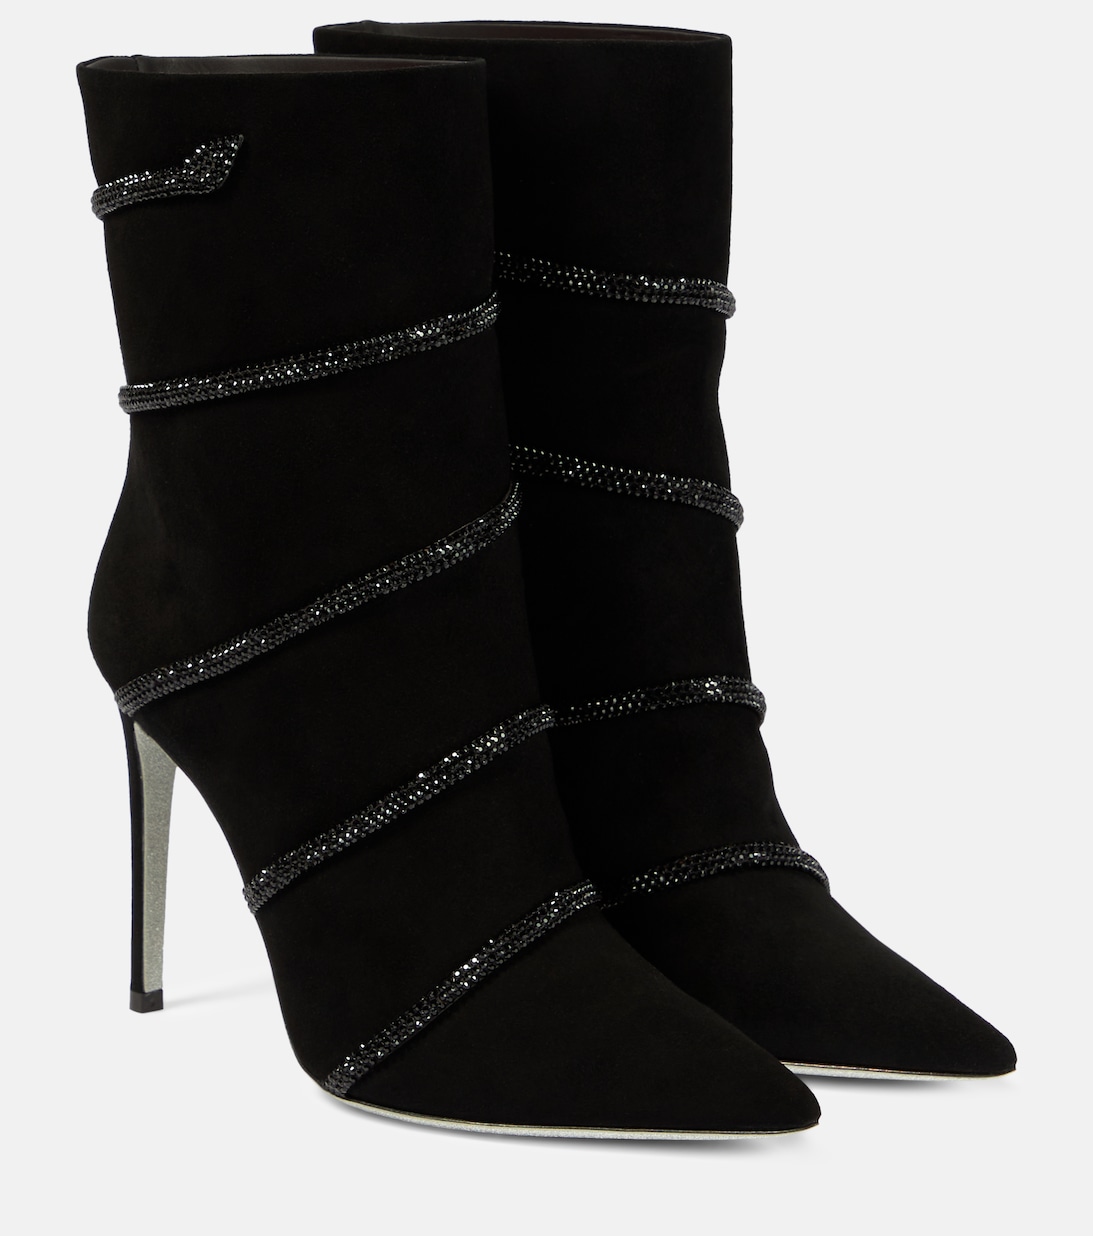 Декорированные замшевые ботинки Morgana Rene Caovilla, черный